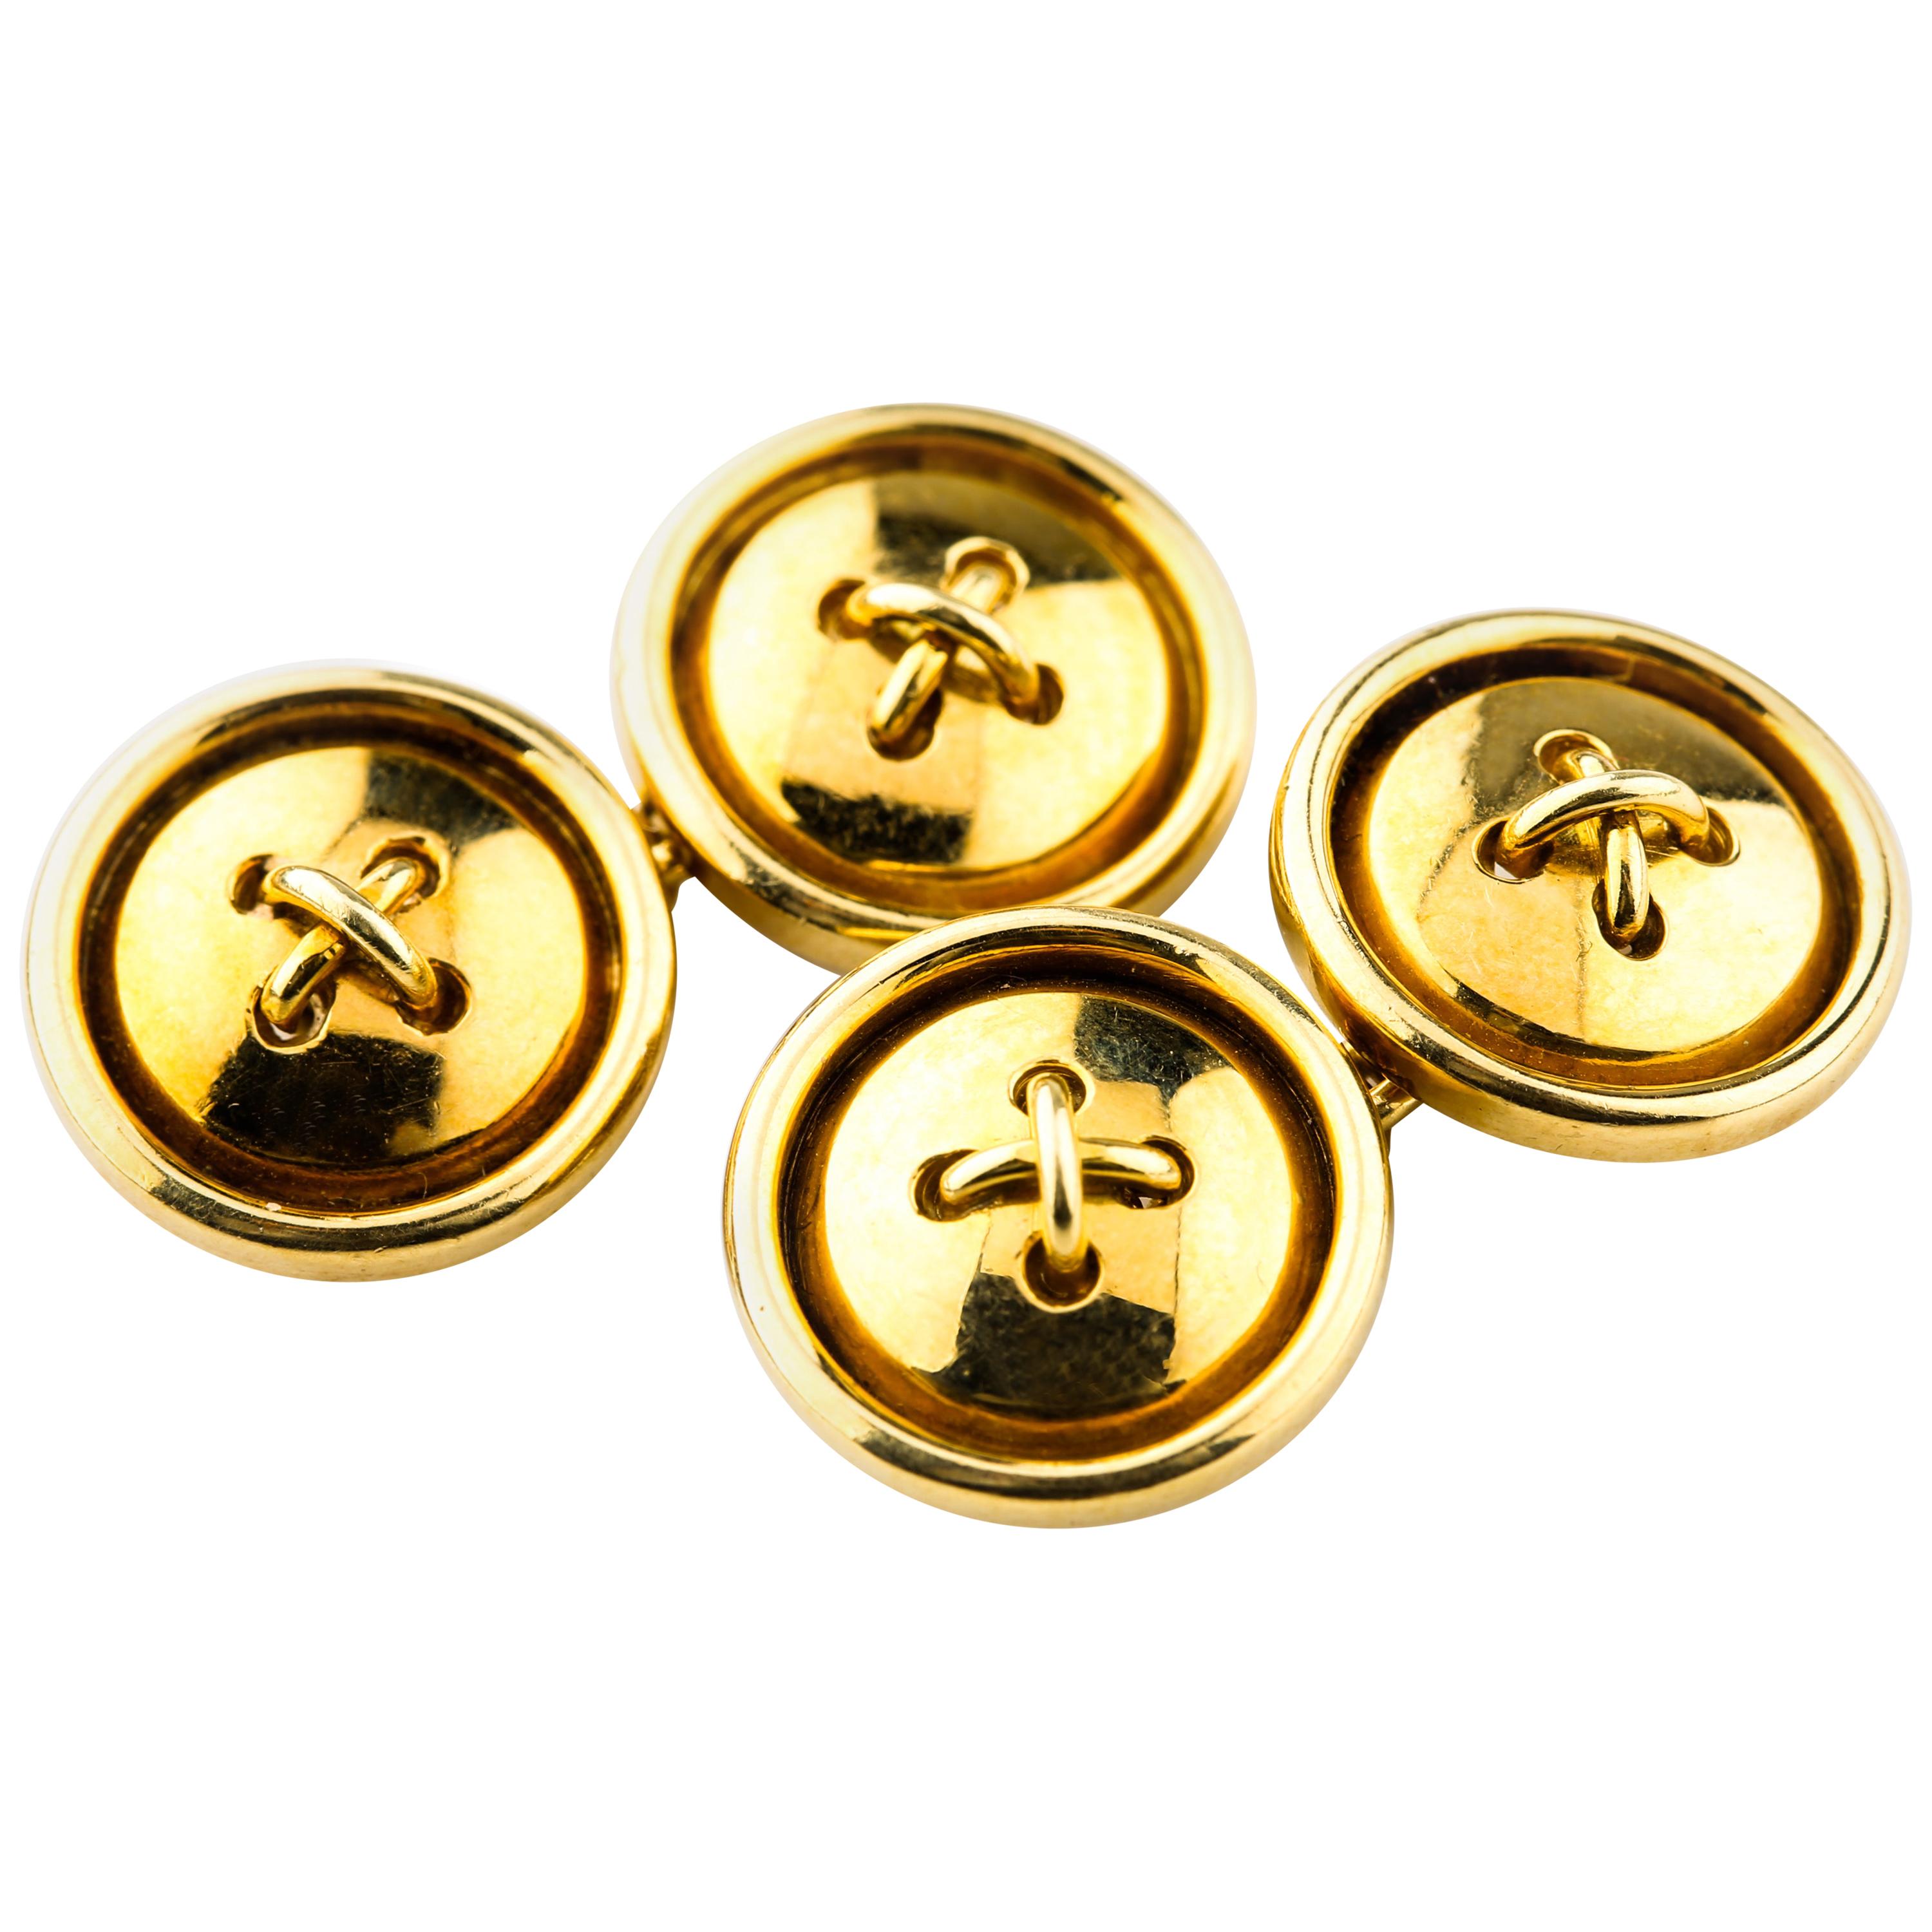 Gold Vintage Button-Style Cufflinks in 18 Karat Yellow Gold